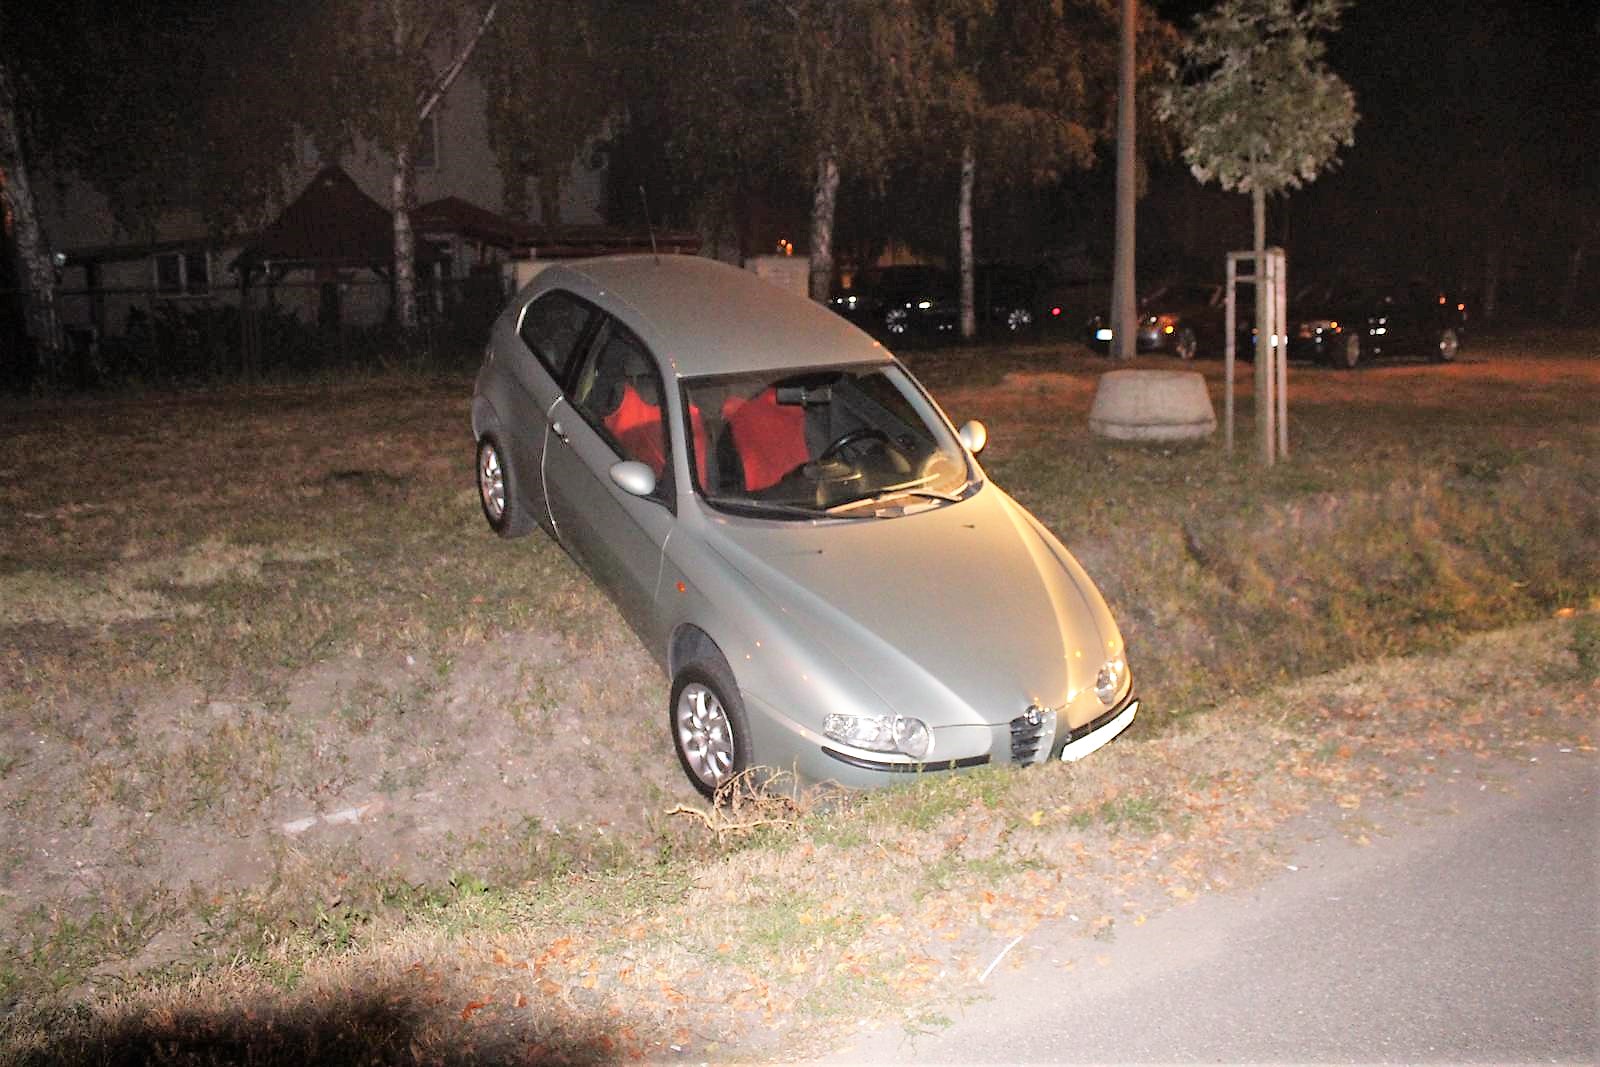 Íme, a botcsinálta debreceni sofőr, aki részegen árokba hajtott egy autóval, ami nem is volt az övé, majd felhívta a rendőröket, hogy ugyan segítsenek már neki kihúzni a kocsit